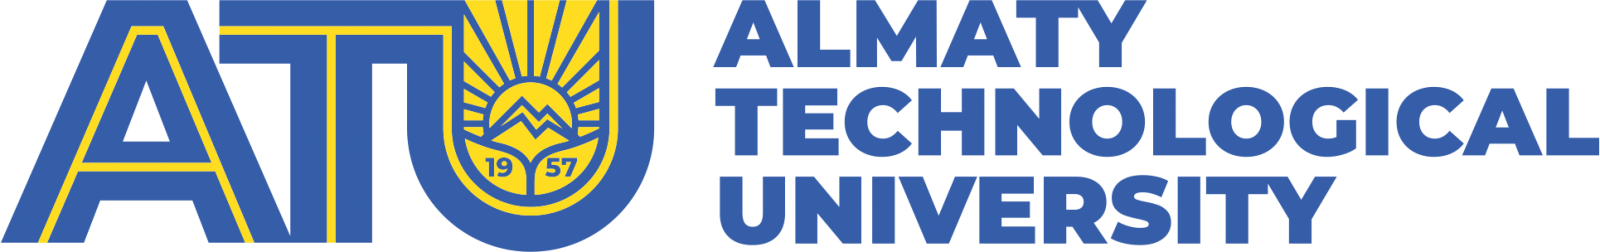 Almaty Technological Uuniversity